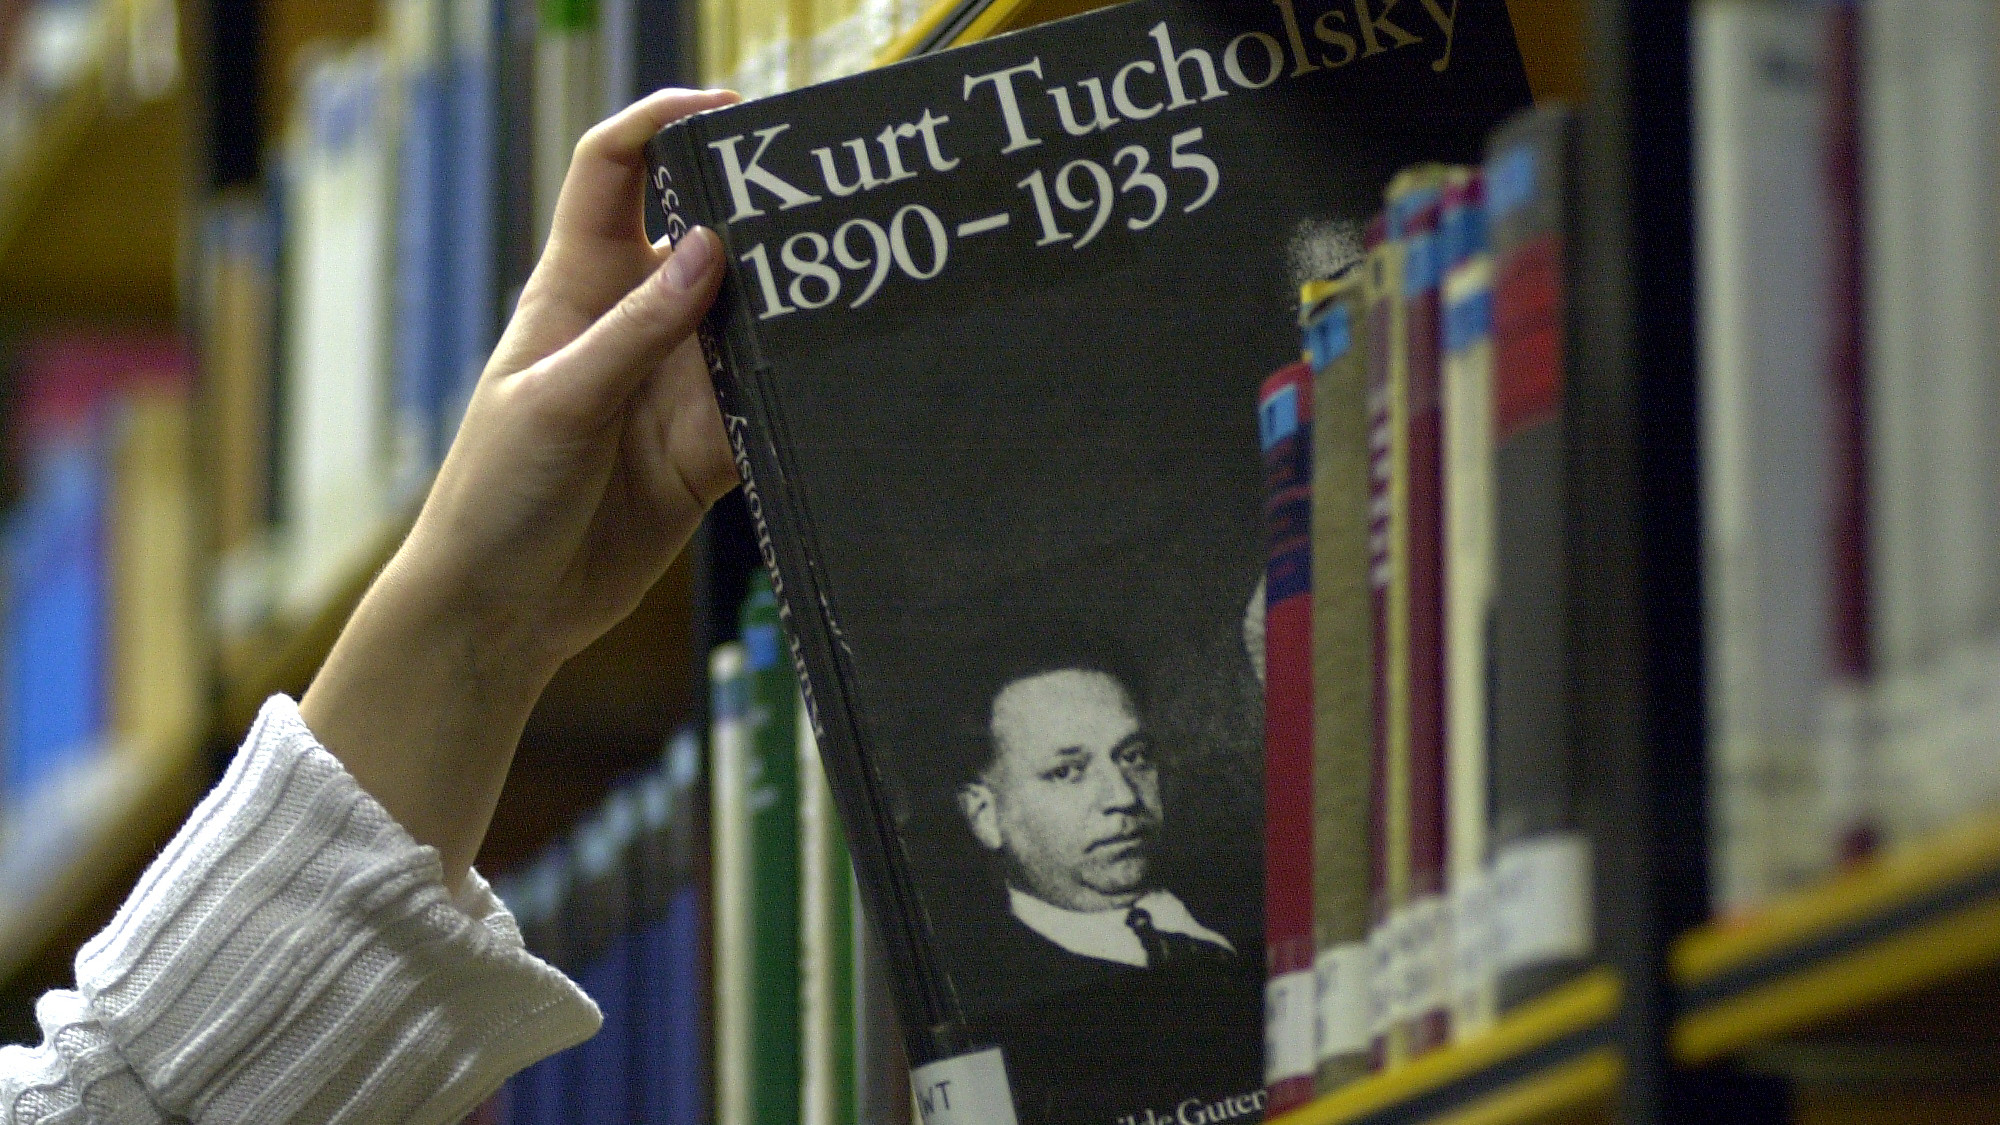 Jemand nimmt eine Biografie von Kurt Tucholsky aus einem Bücherregal.